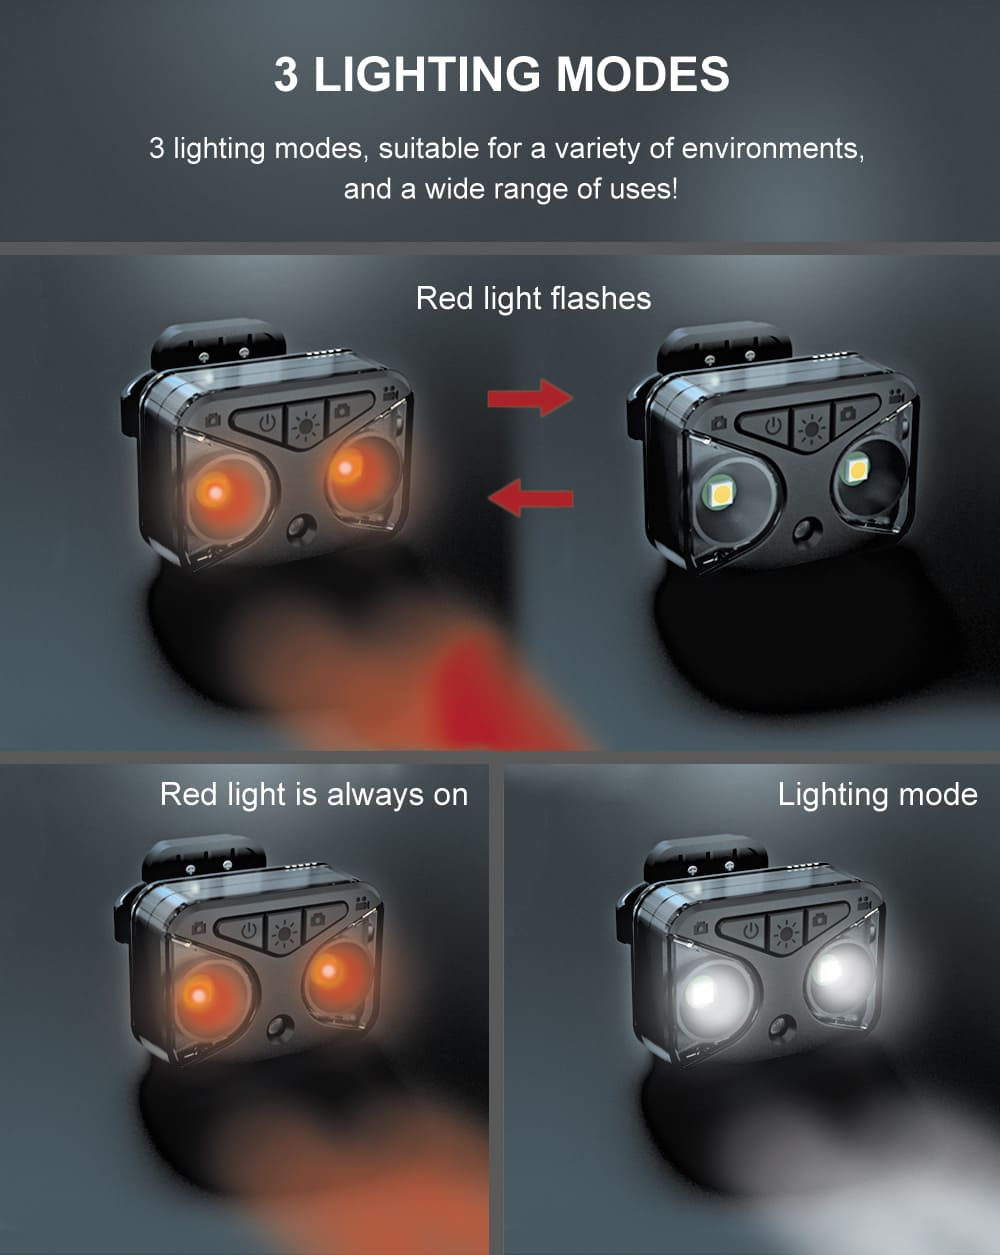 осветљење бицикла са камером ЛЕД задње светло + показивачи правца